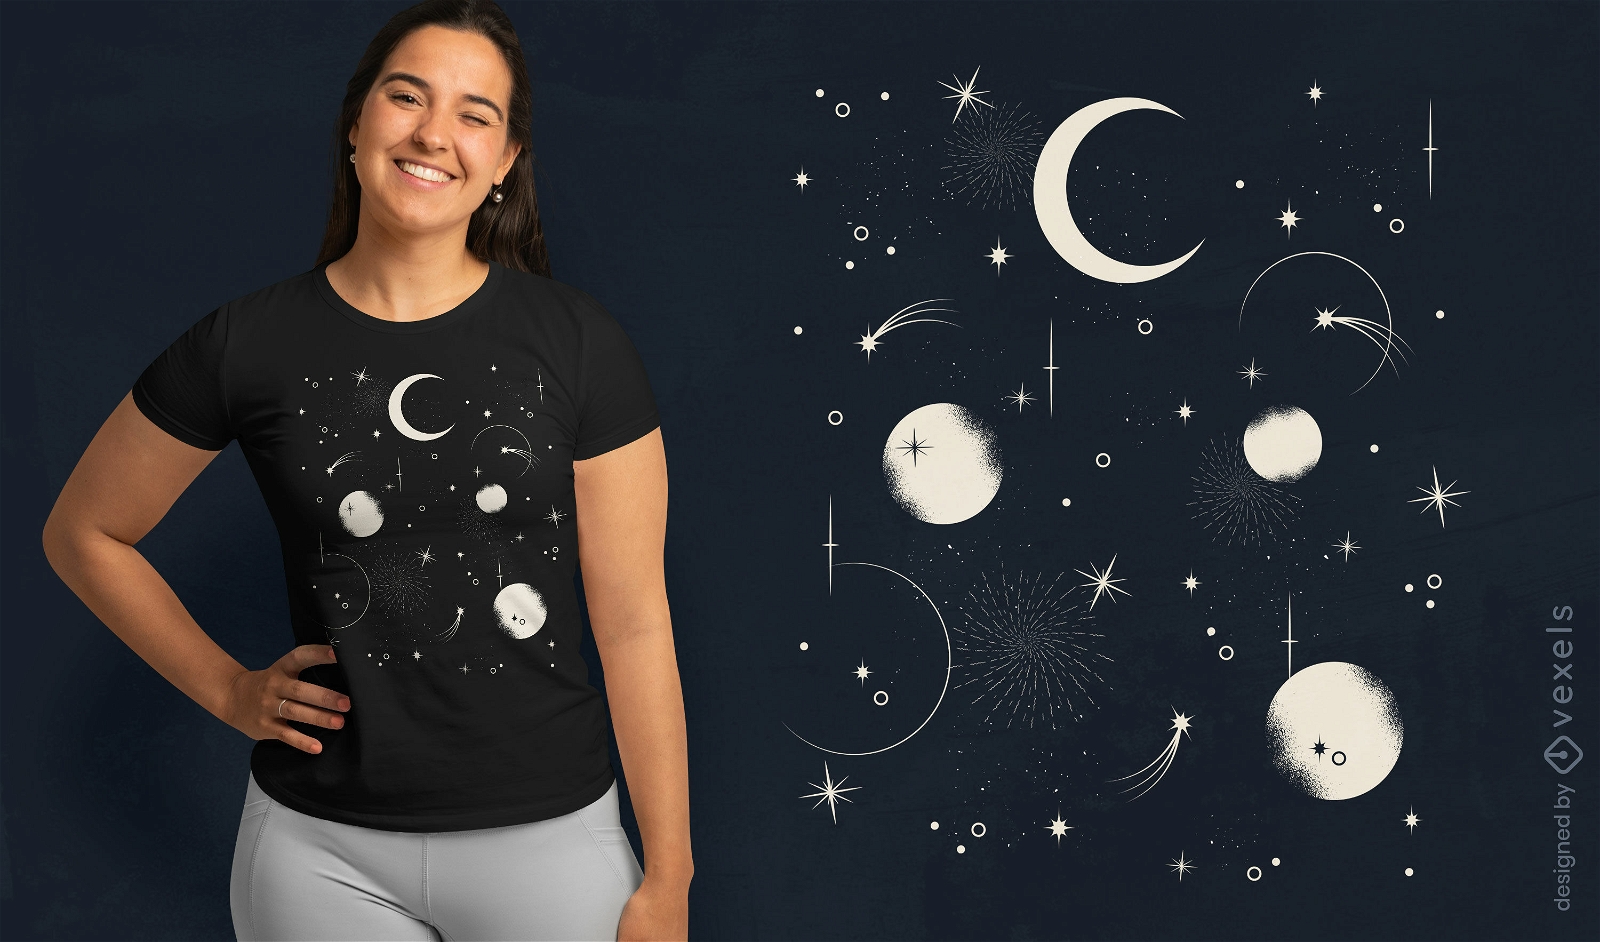 Lua e estrelas no design de camiseta do céu noturno